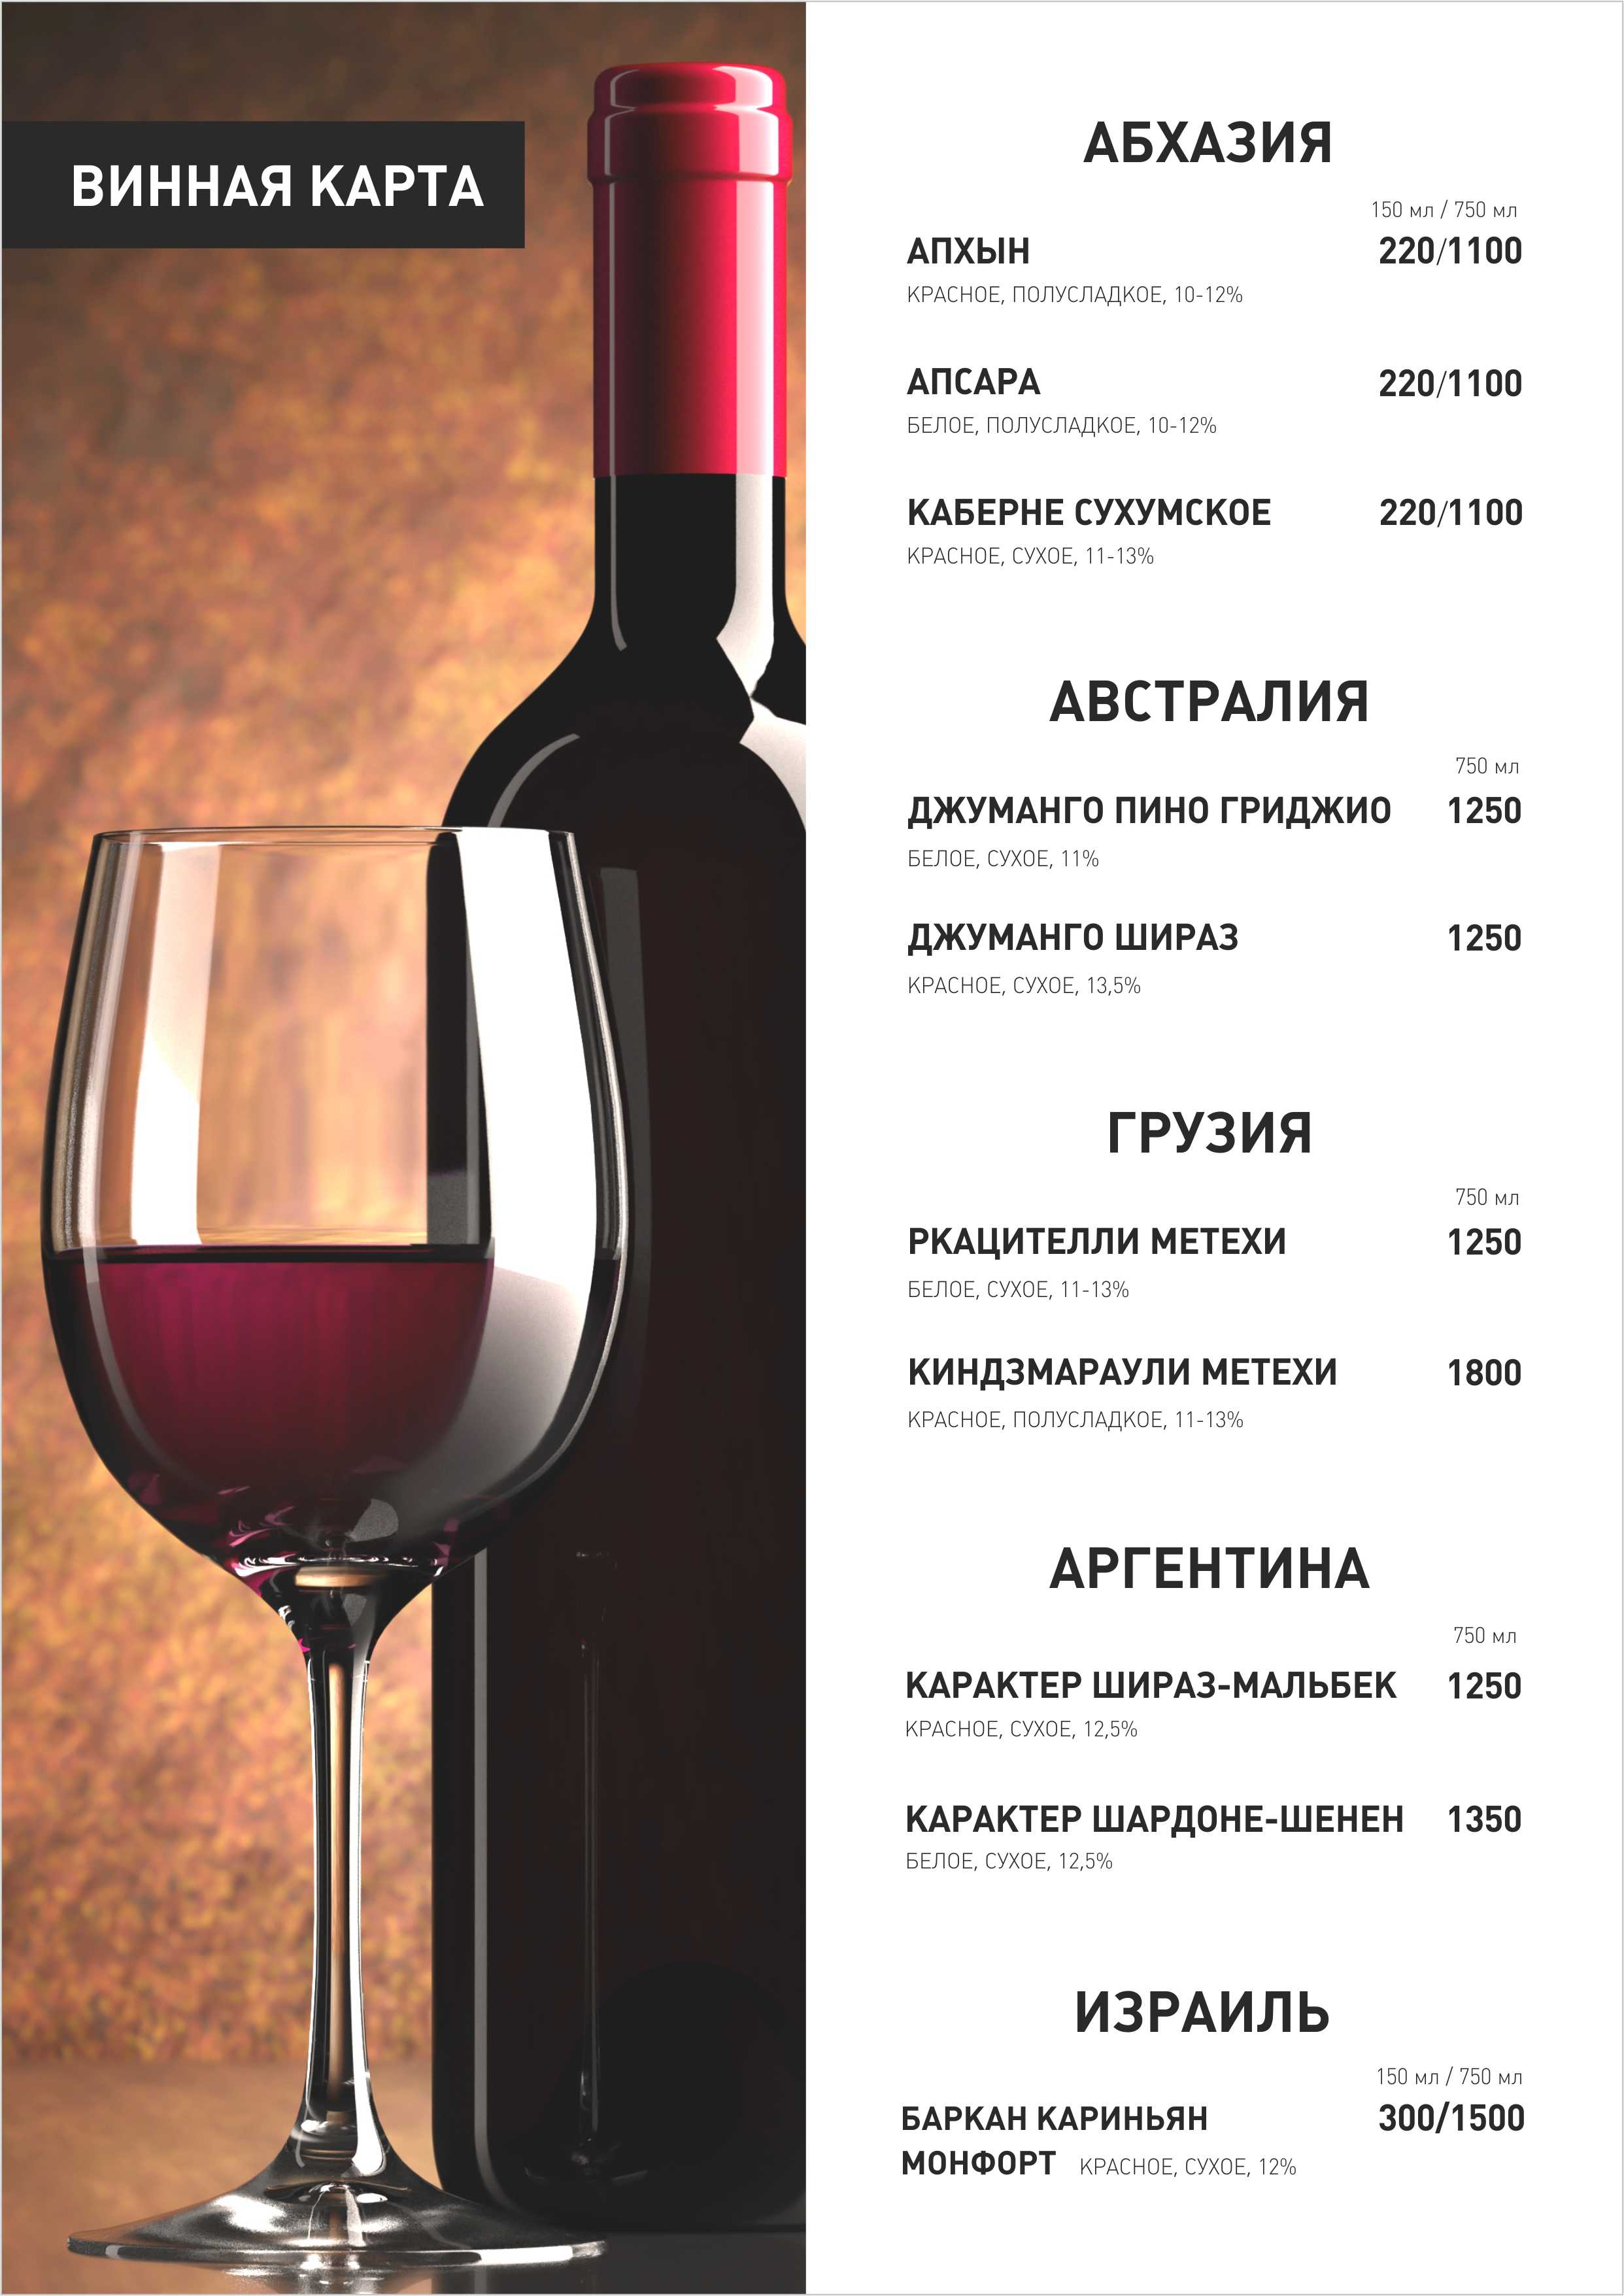 Составление винной карты или кто профессионально составит карту вин | я люблю вино